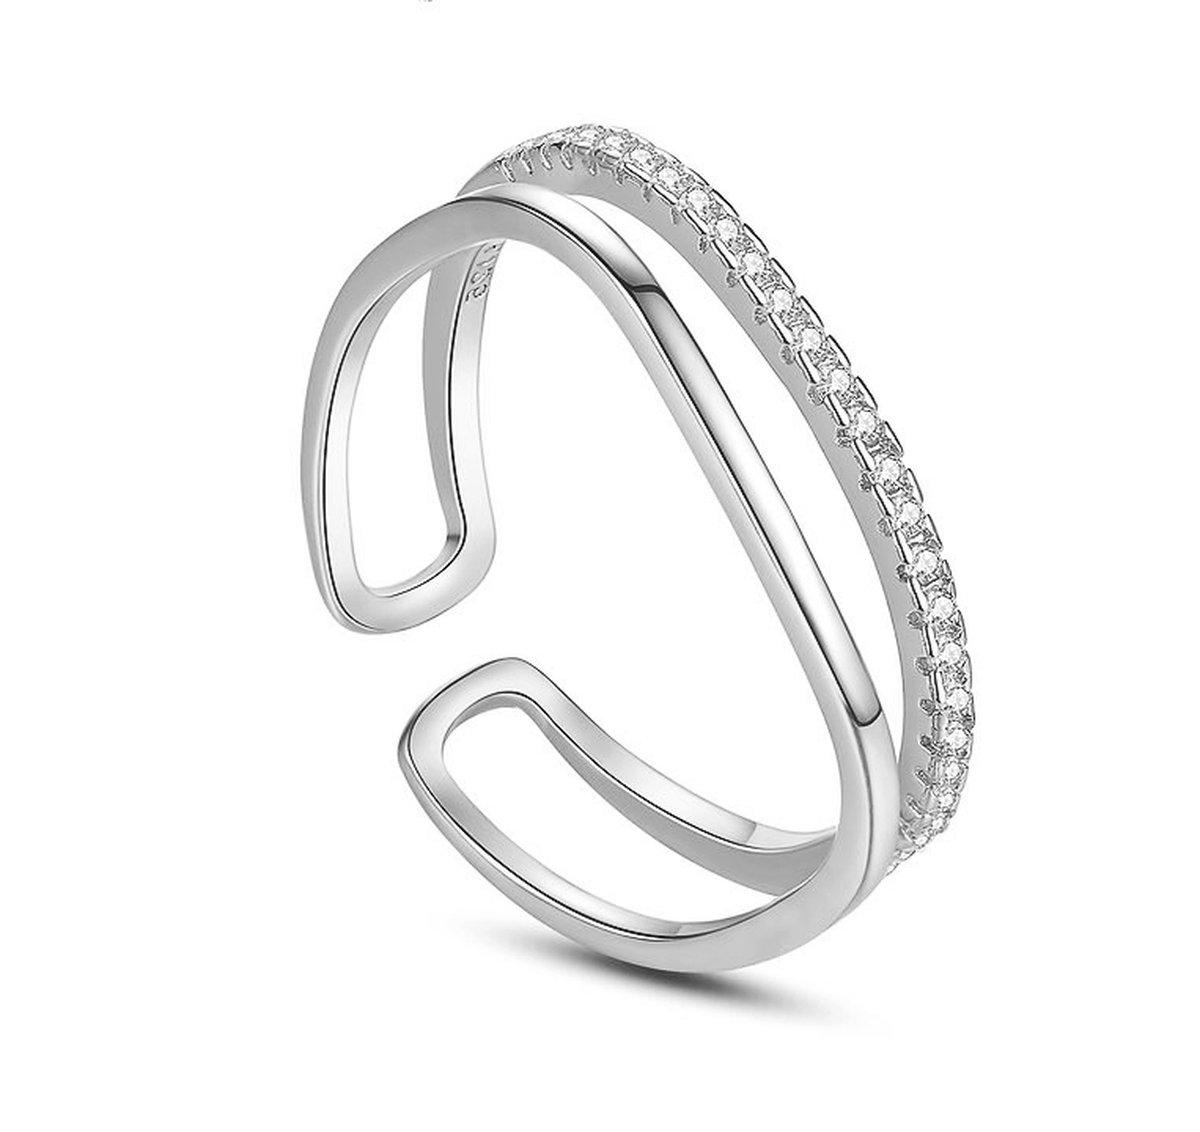 Ring dames verstelbaar - Multimaat ring zilver 925 Aria - verstelbare ring zilverkleurig met geschenkverpakking van Sophie Siero - Sieraden voor dames